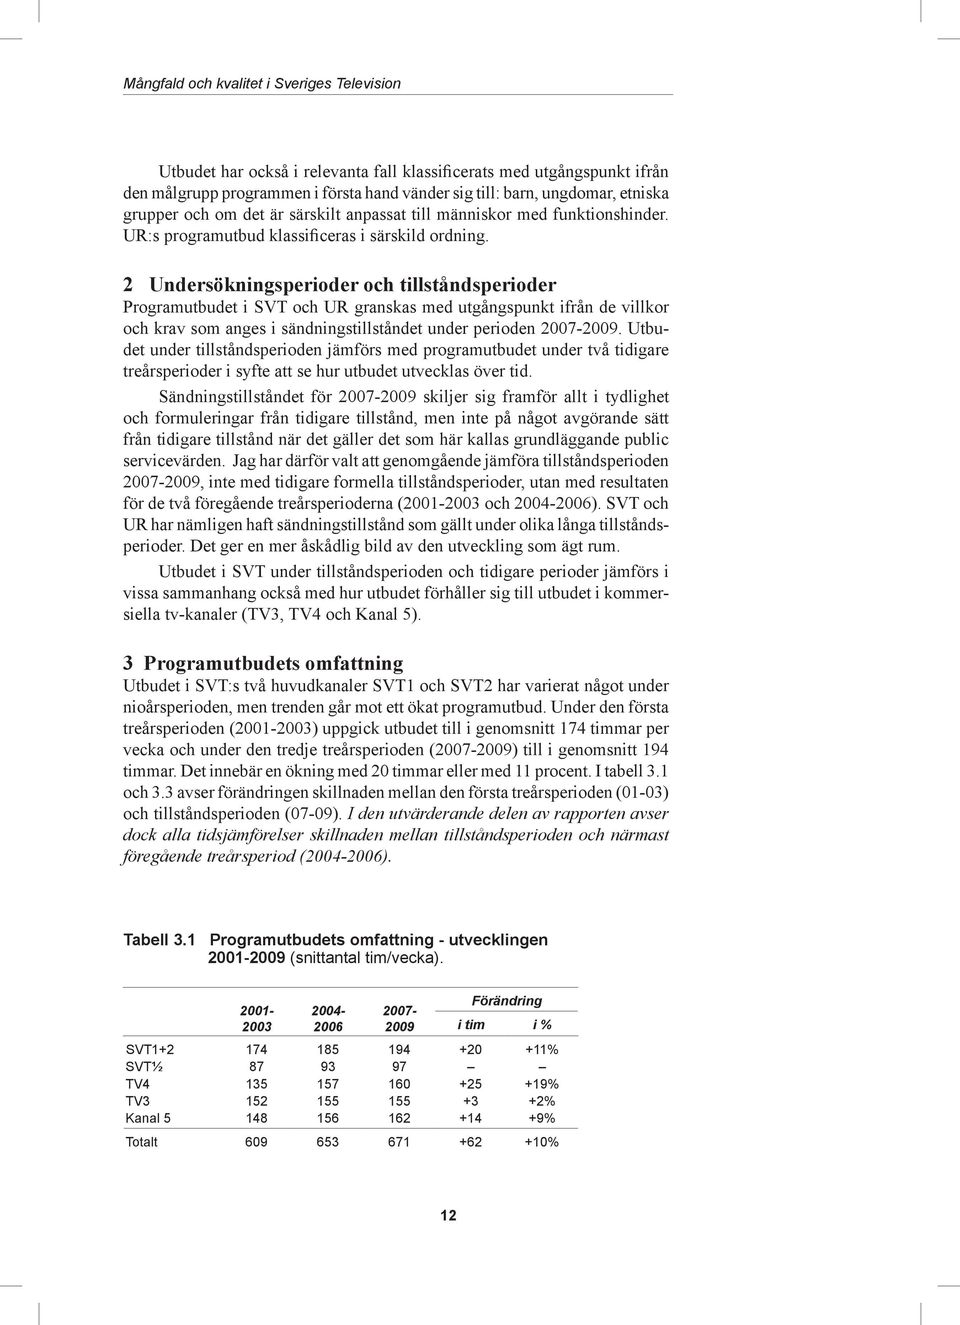 2 Undersökningsperioder och tillståndsperioder Programutbudet i SVT och UR granskas med utgångspunkt ifrån de villkor och krav som anges i sändningstillståndet under perioden 2007-2009.